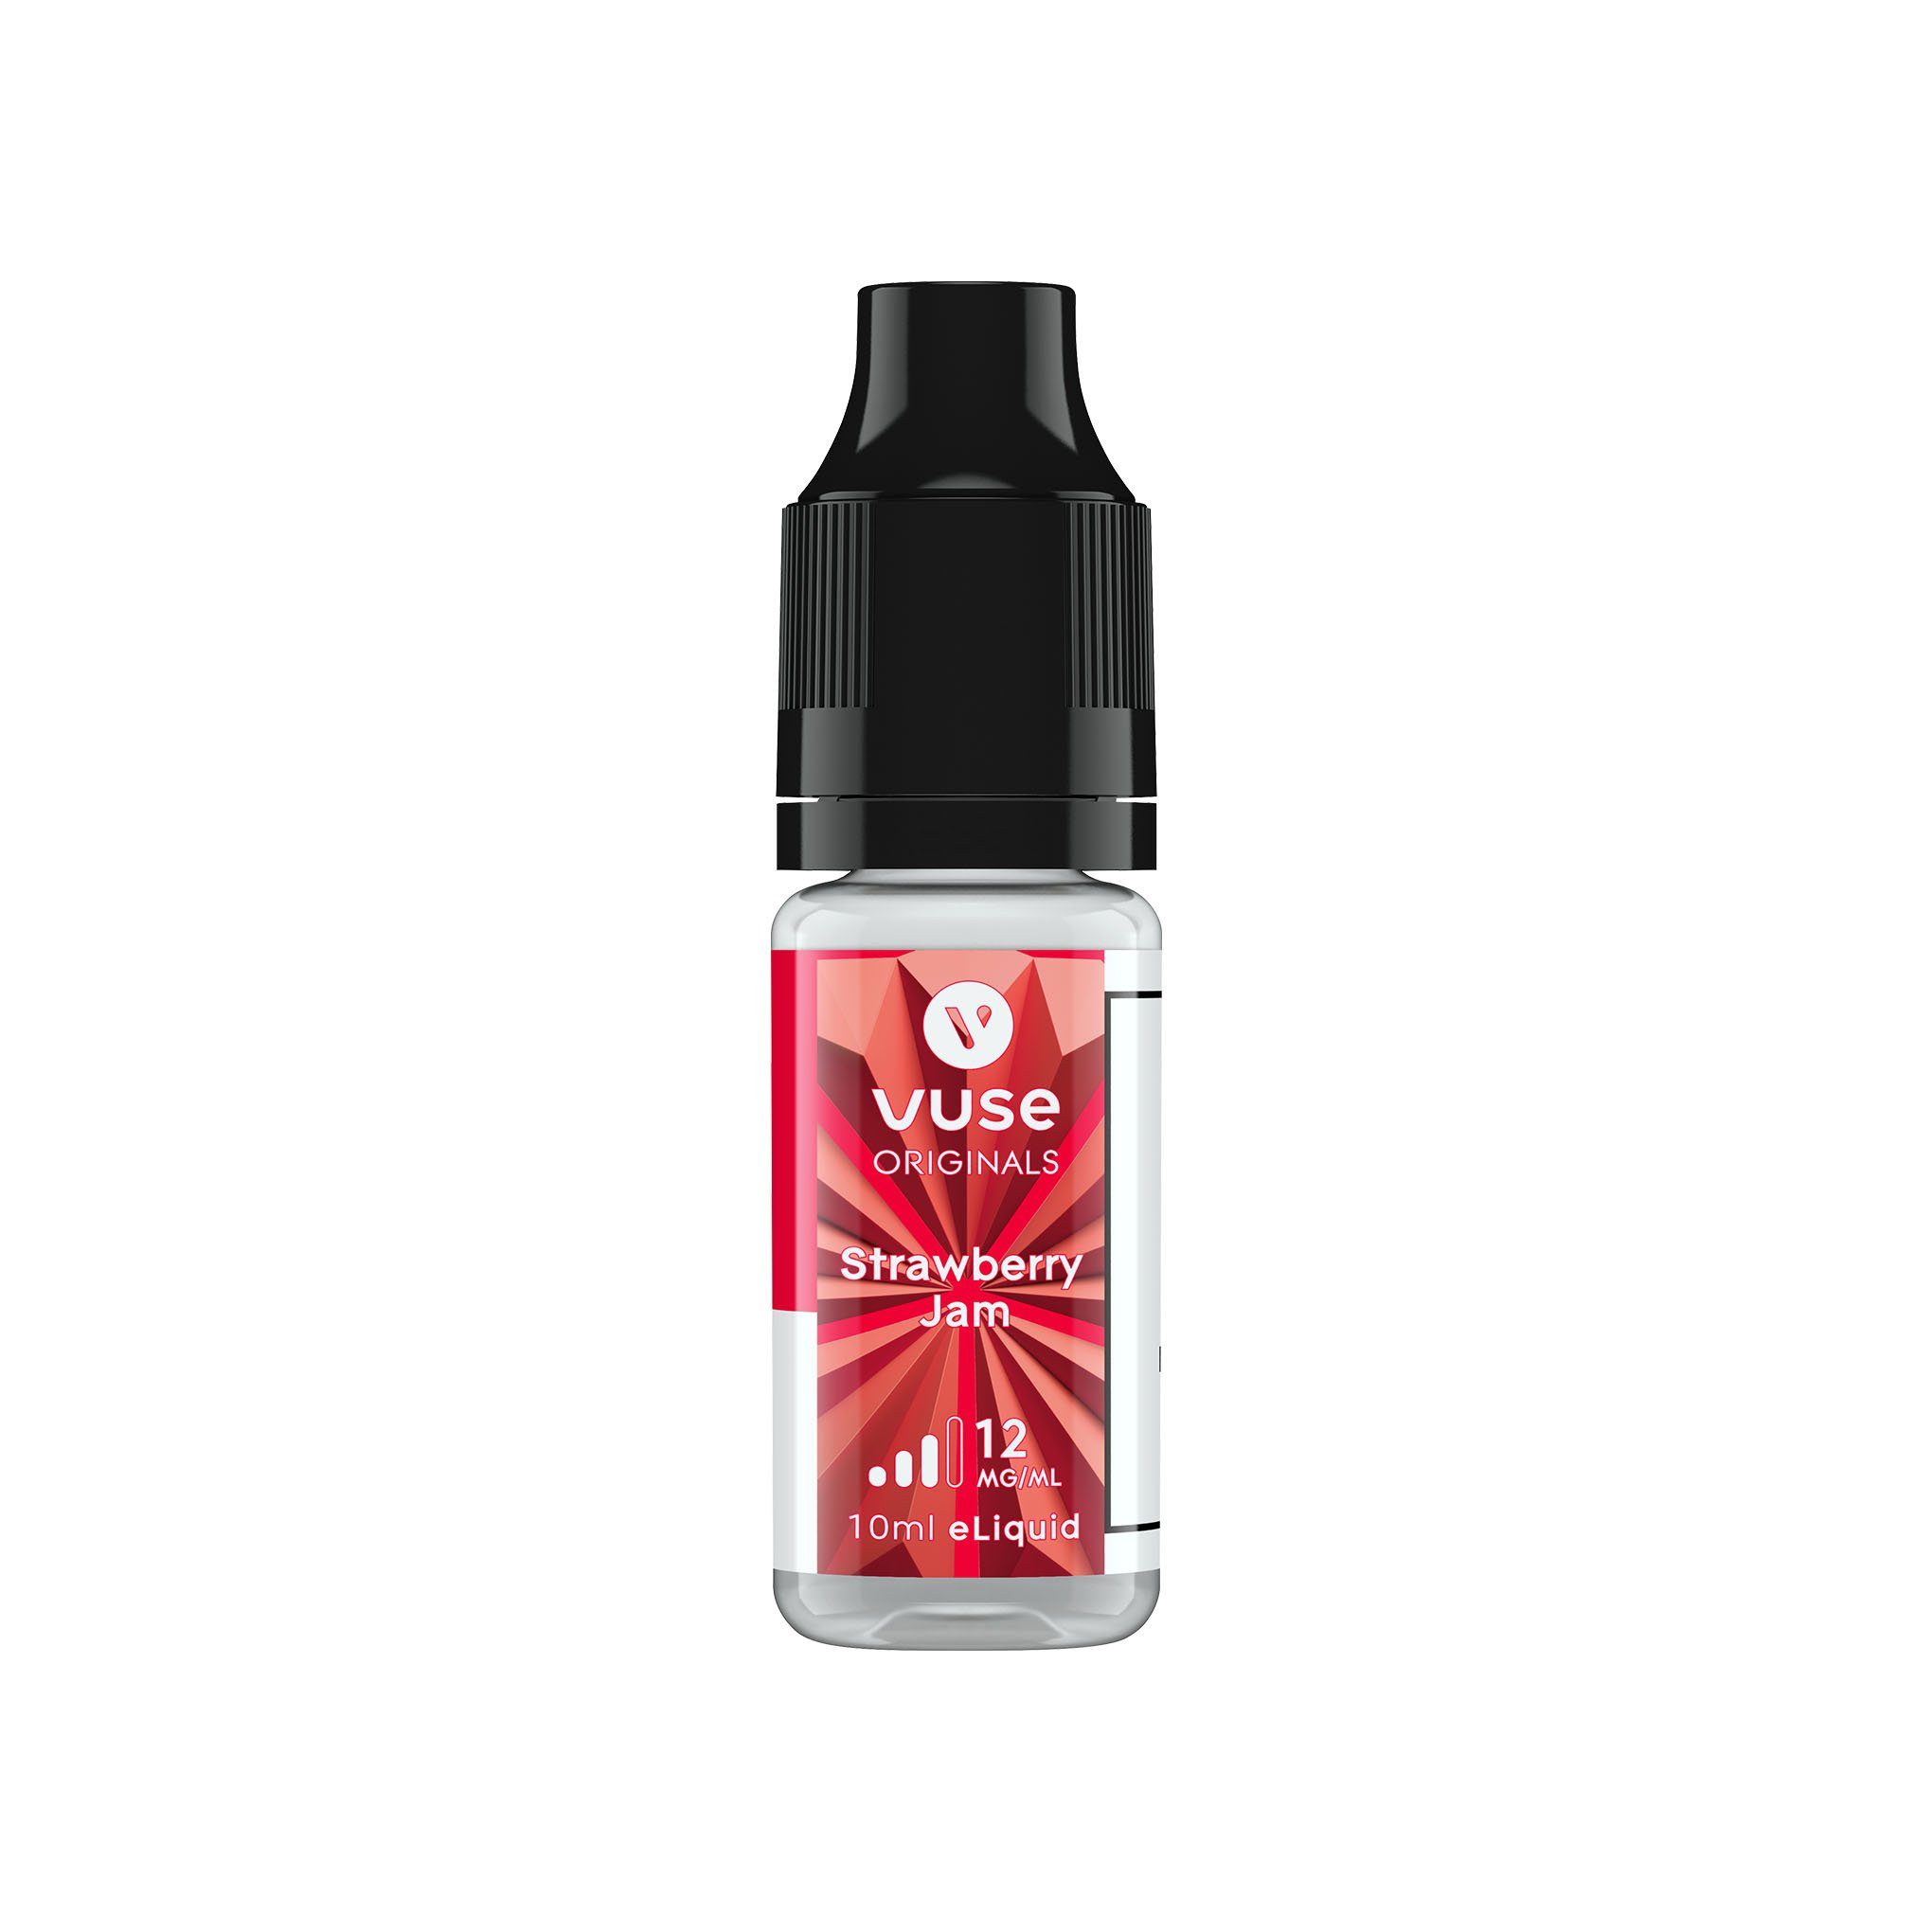 VUSE Original E-Liquid Strawberry Jam 12MG - Medium Nicotine 